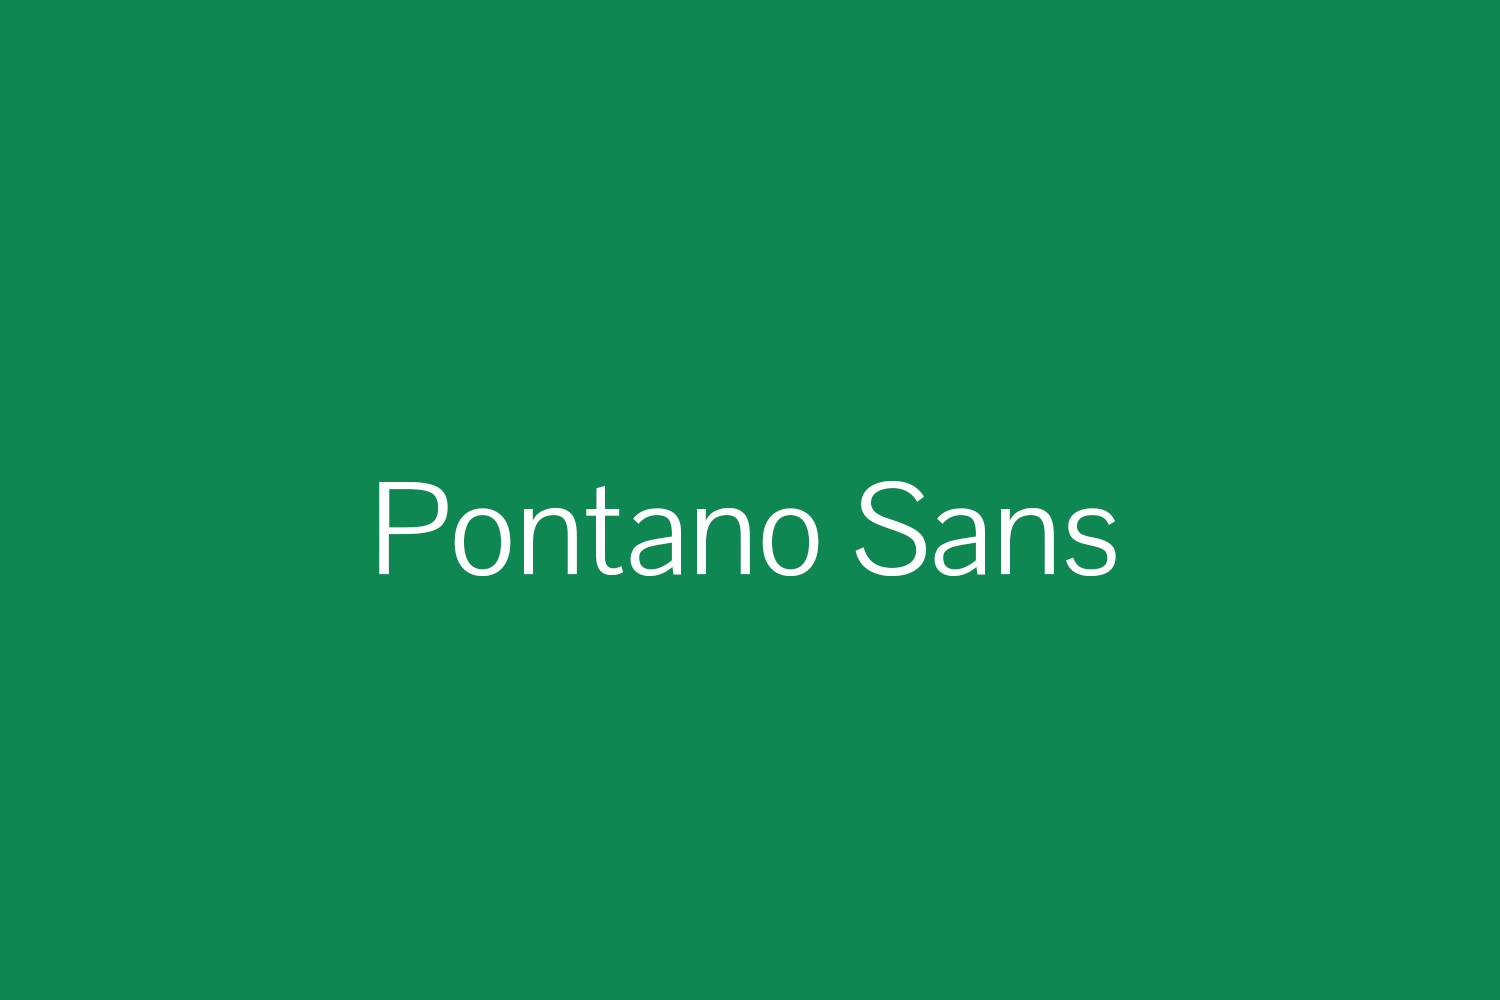 Pontano Sans